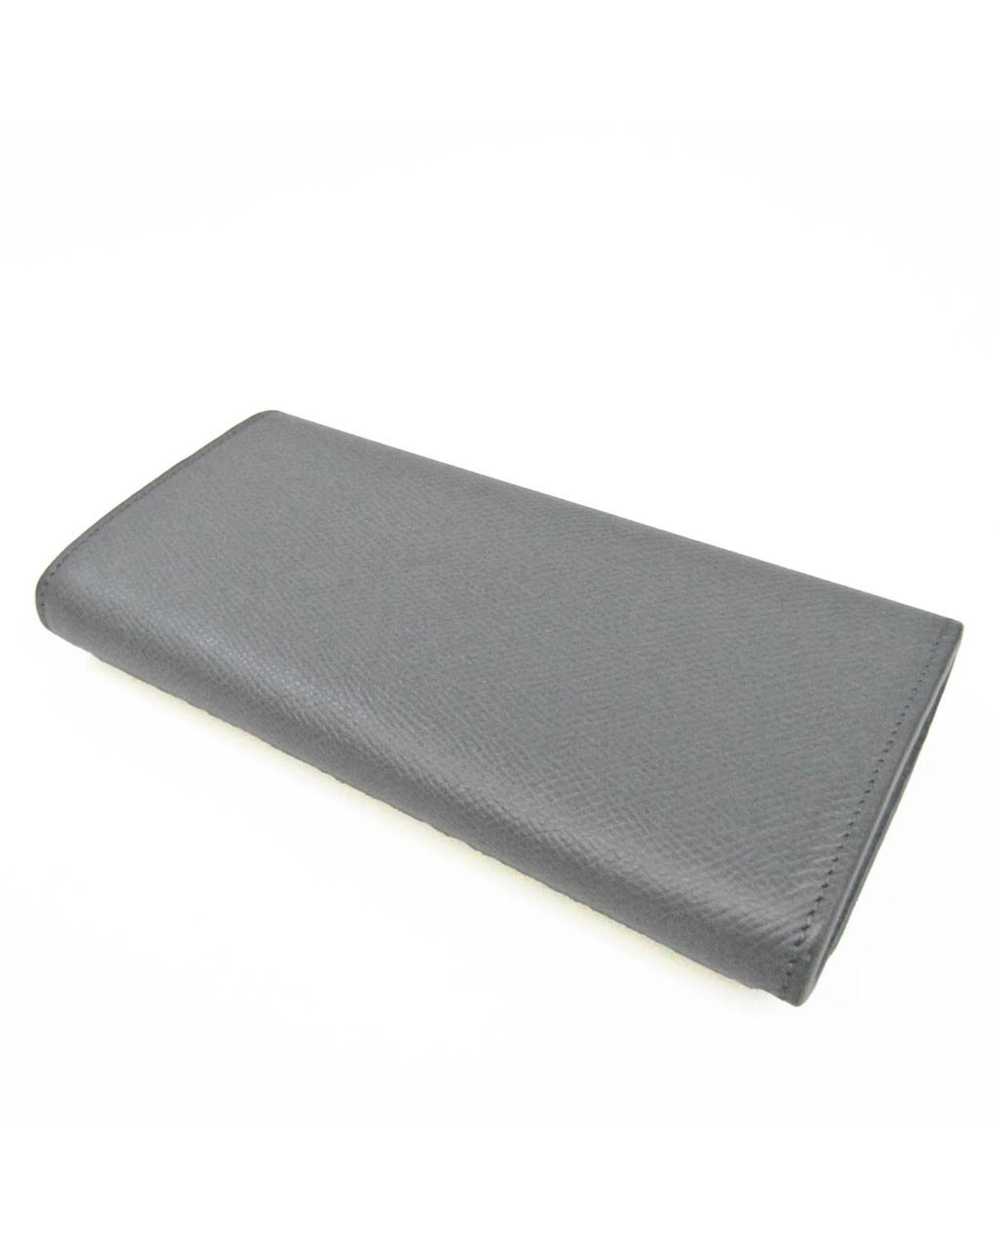 Celine Large Flap Wallet - image 2